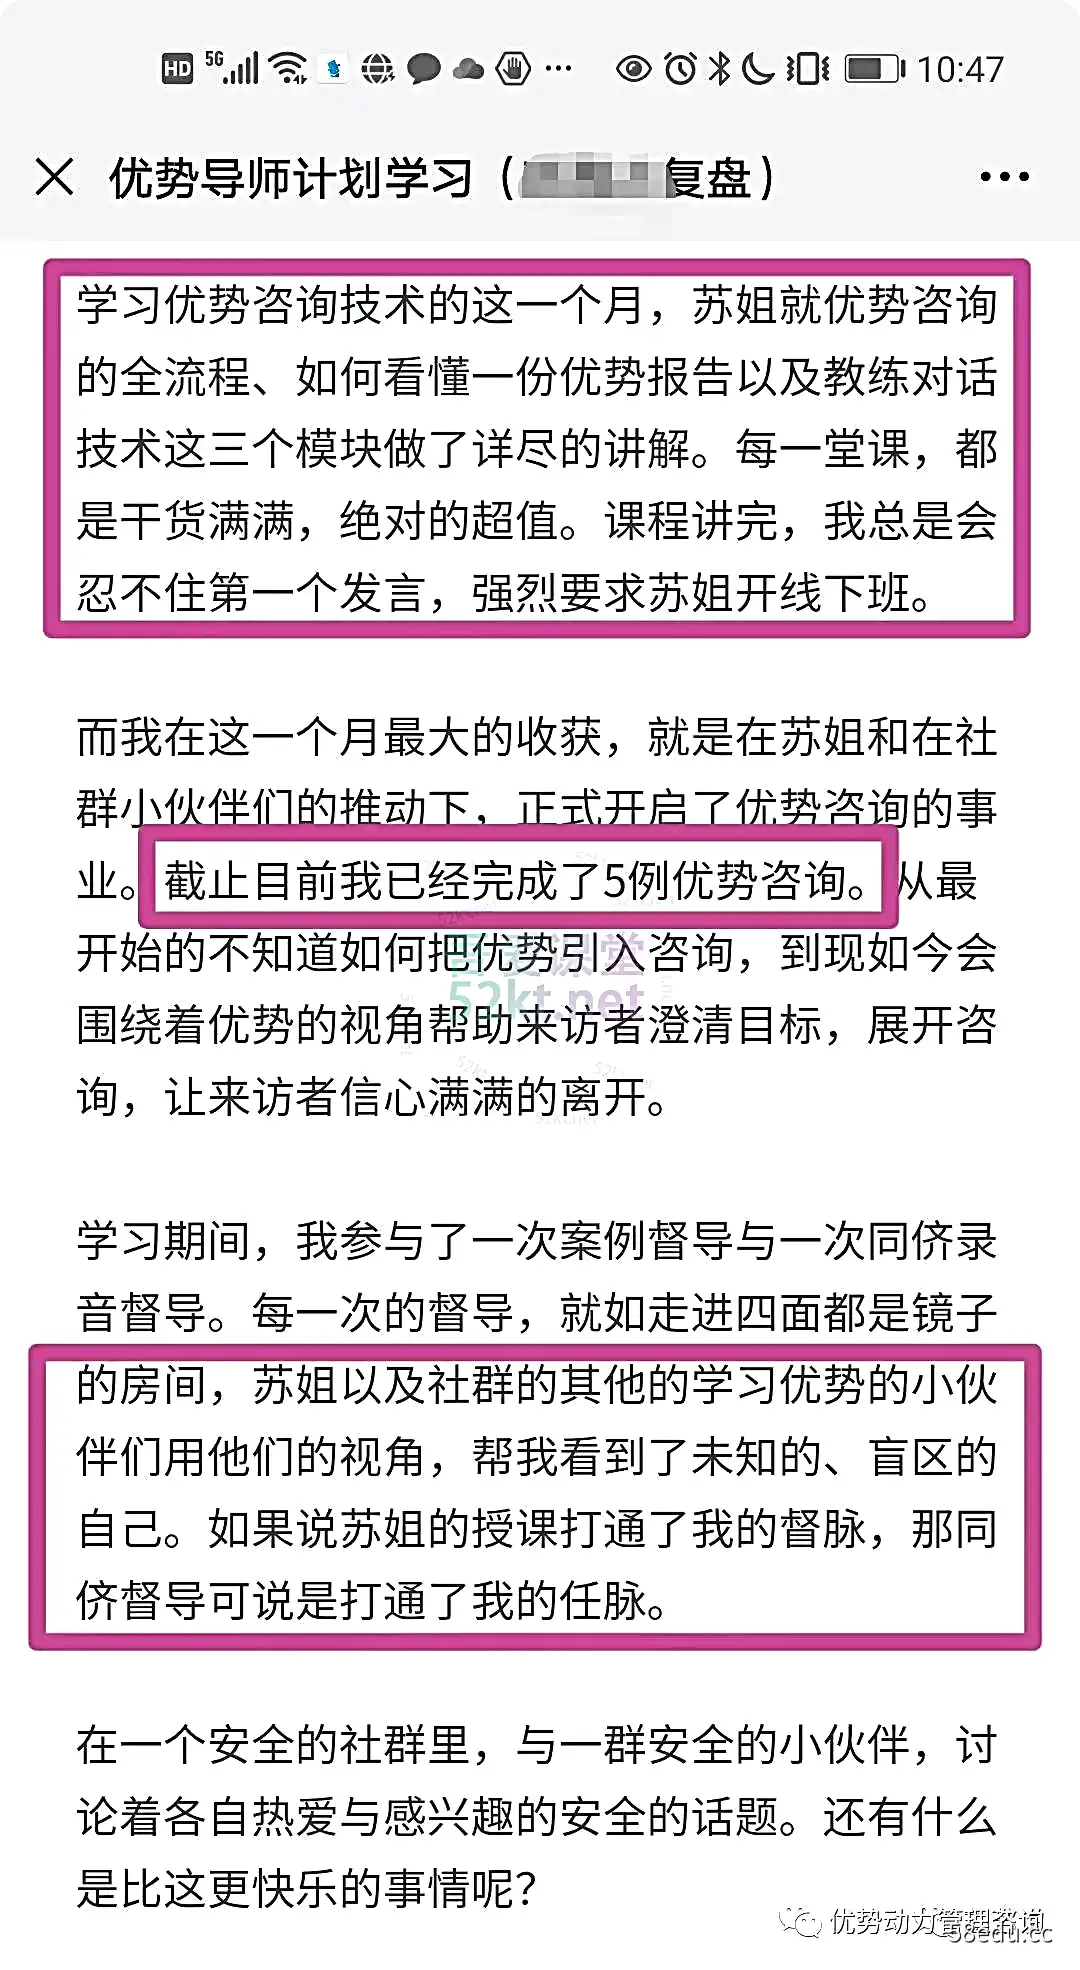 [优势力量]苏姐优势导师计划培训推广价值3.5万元to 4th Zhang